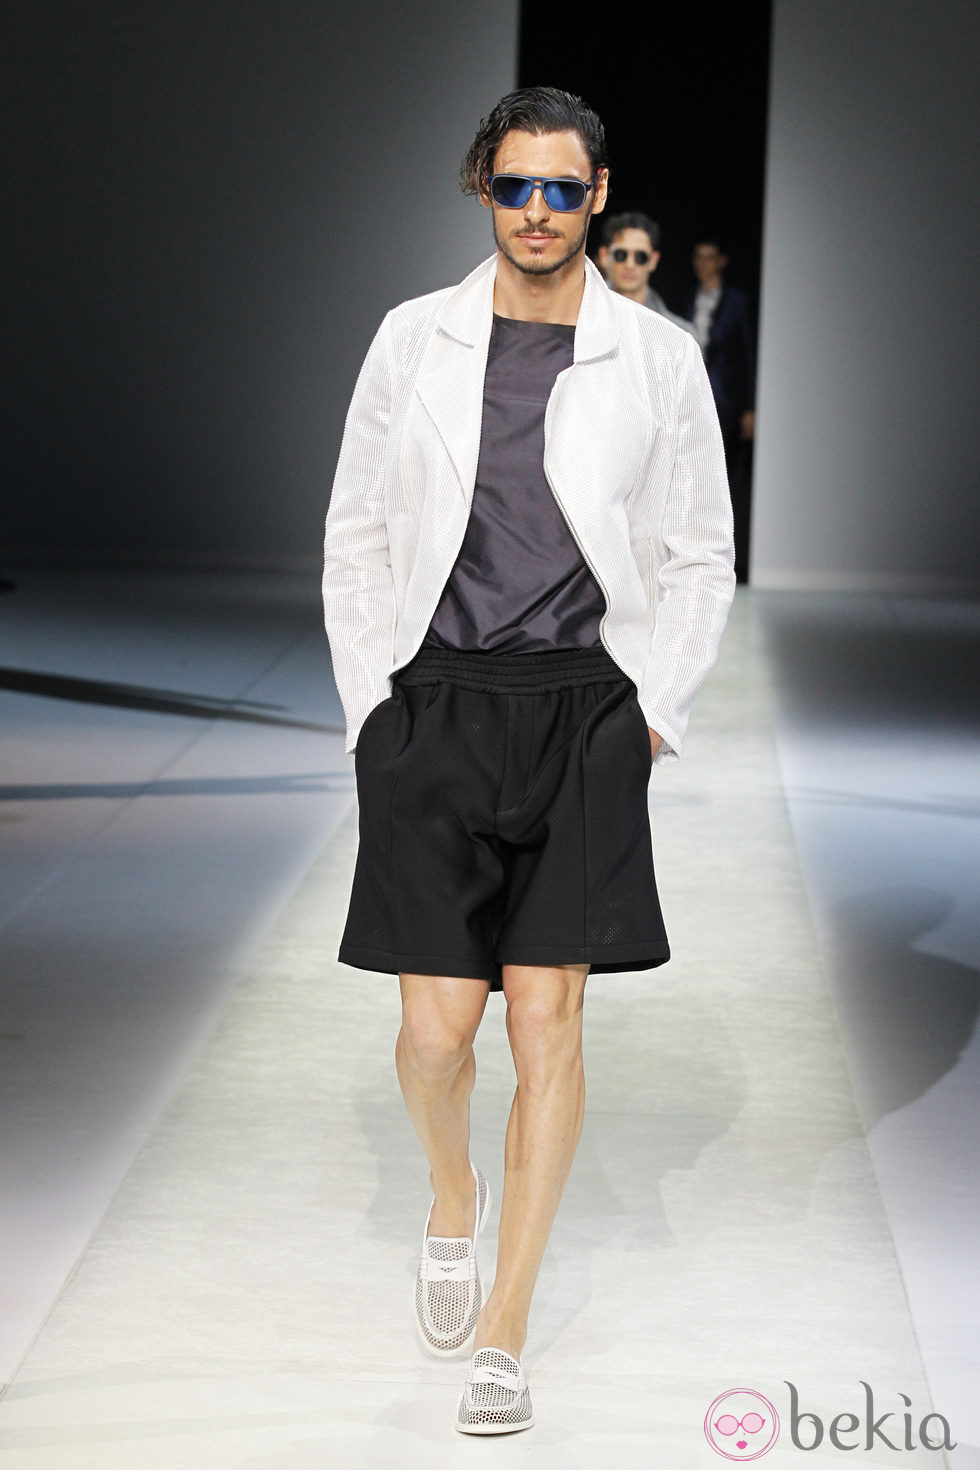 Pantalón corto negro de la colección primavera/verano 2014 de Emporio Armani en la Semana de la Moda de Milán